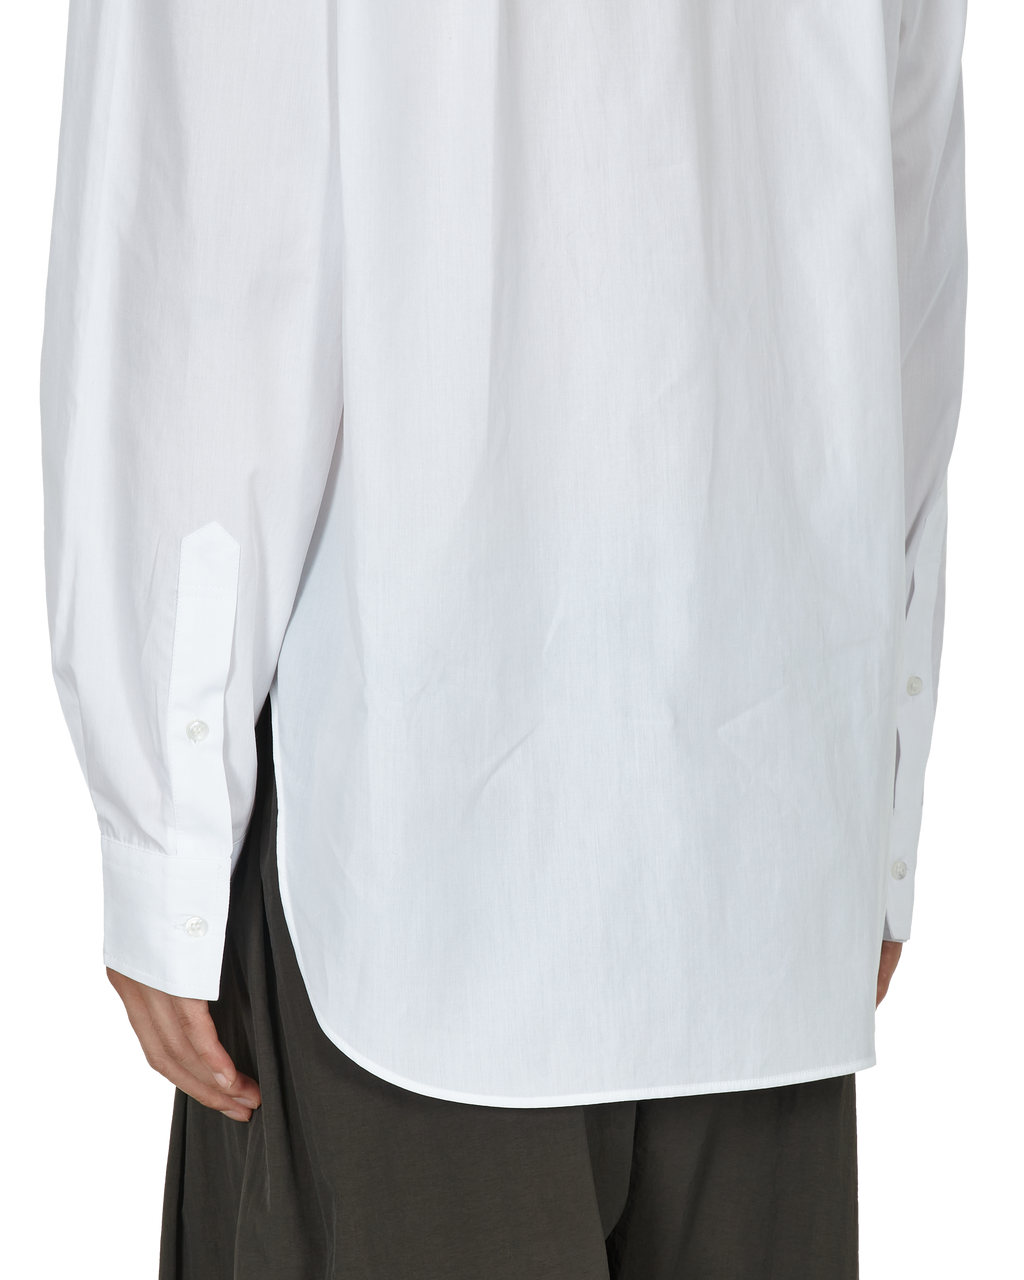 _J.L - A.L_ Triple Collar Shirt J278598-XL-White